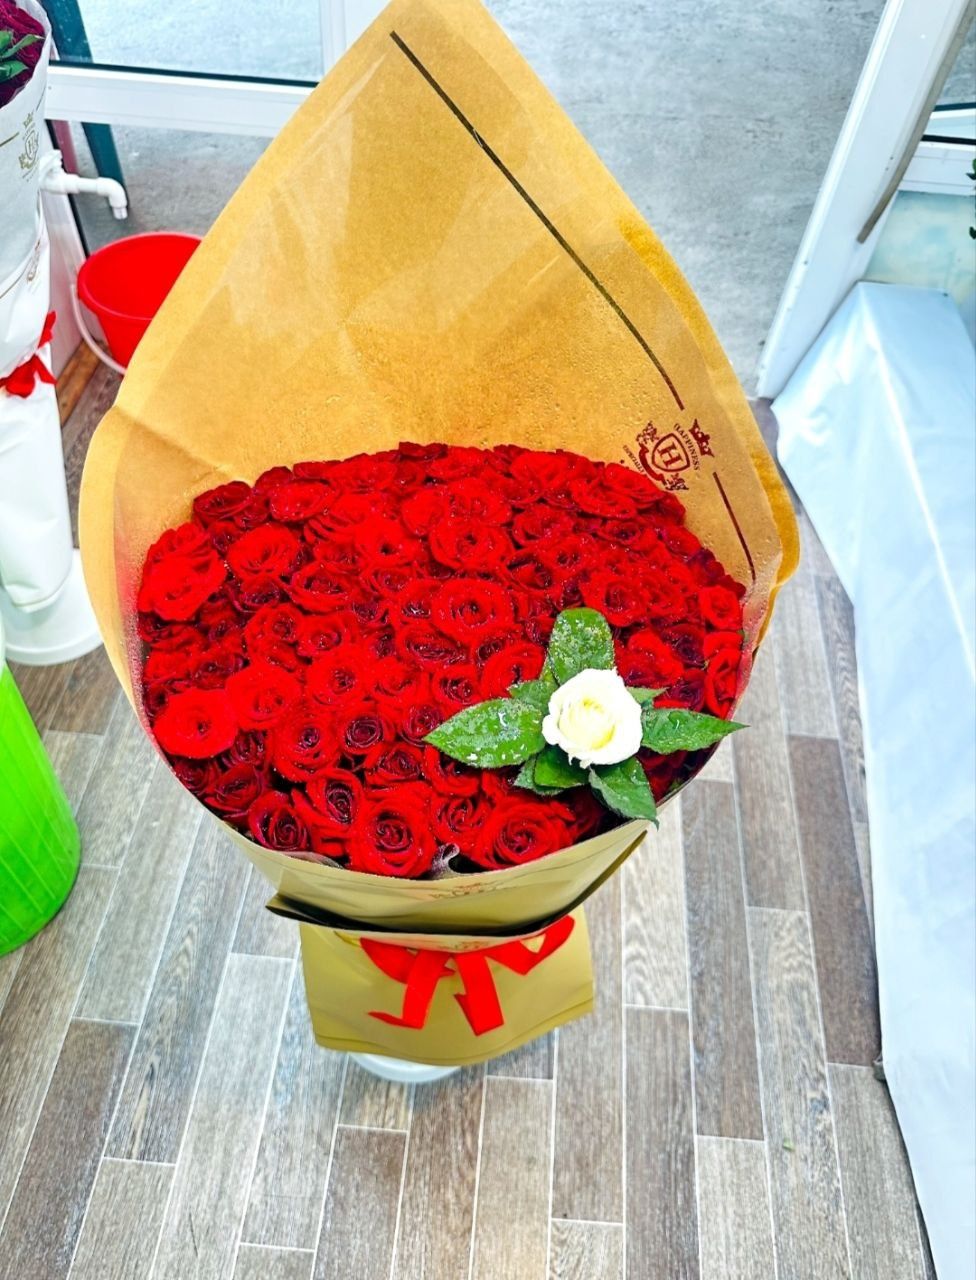 Доставка цветов роз по Ташкенту. Мега скидки.